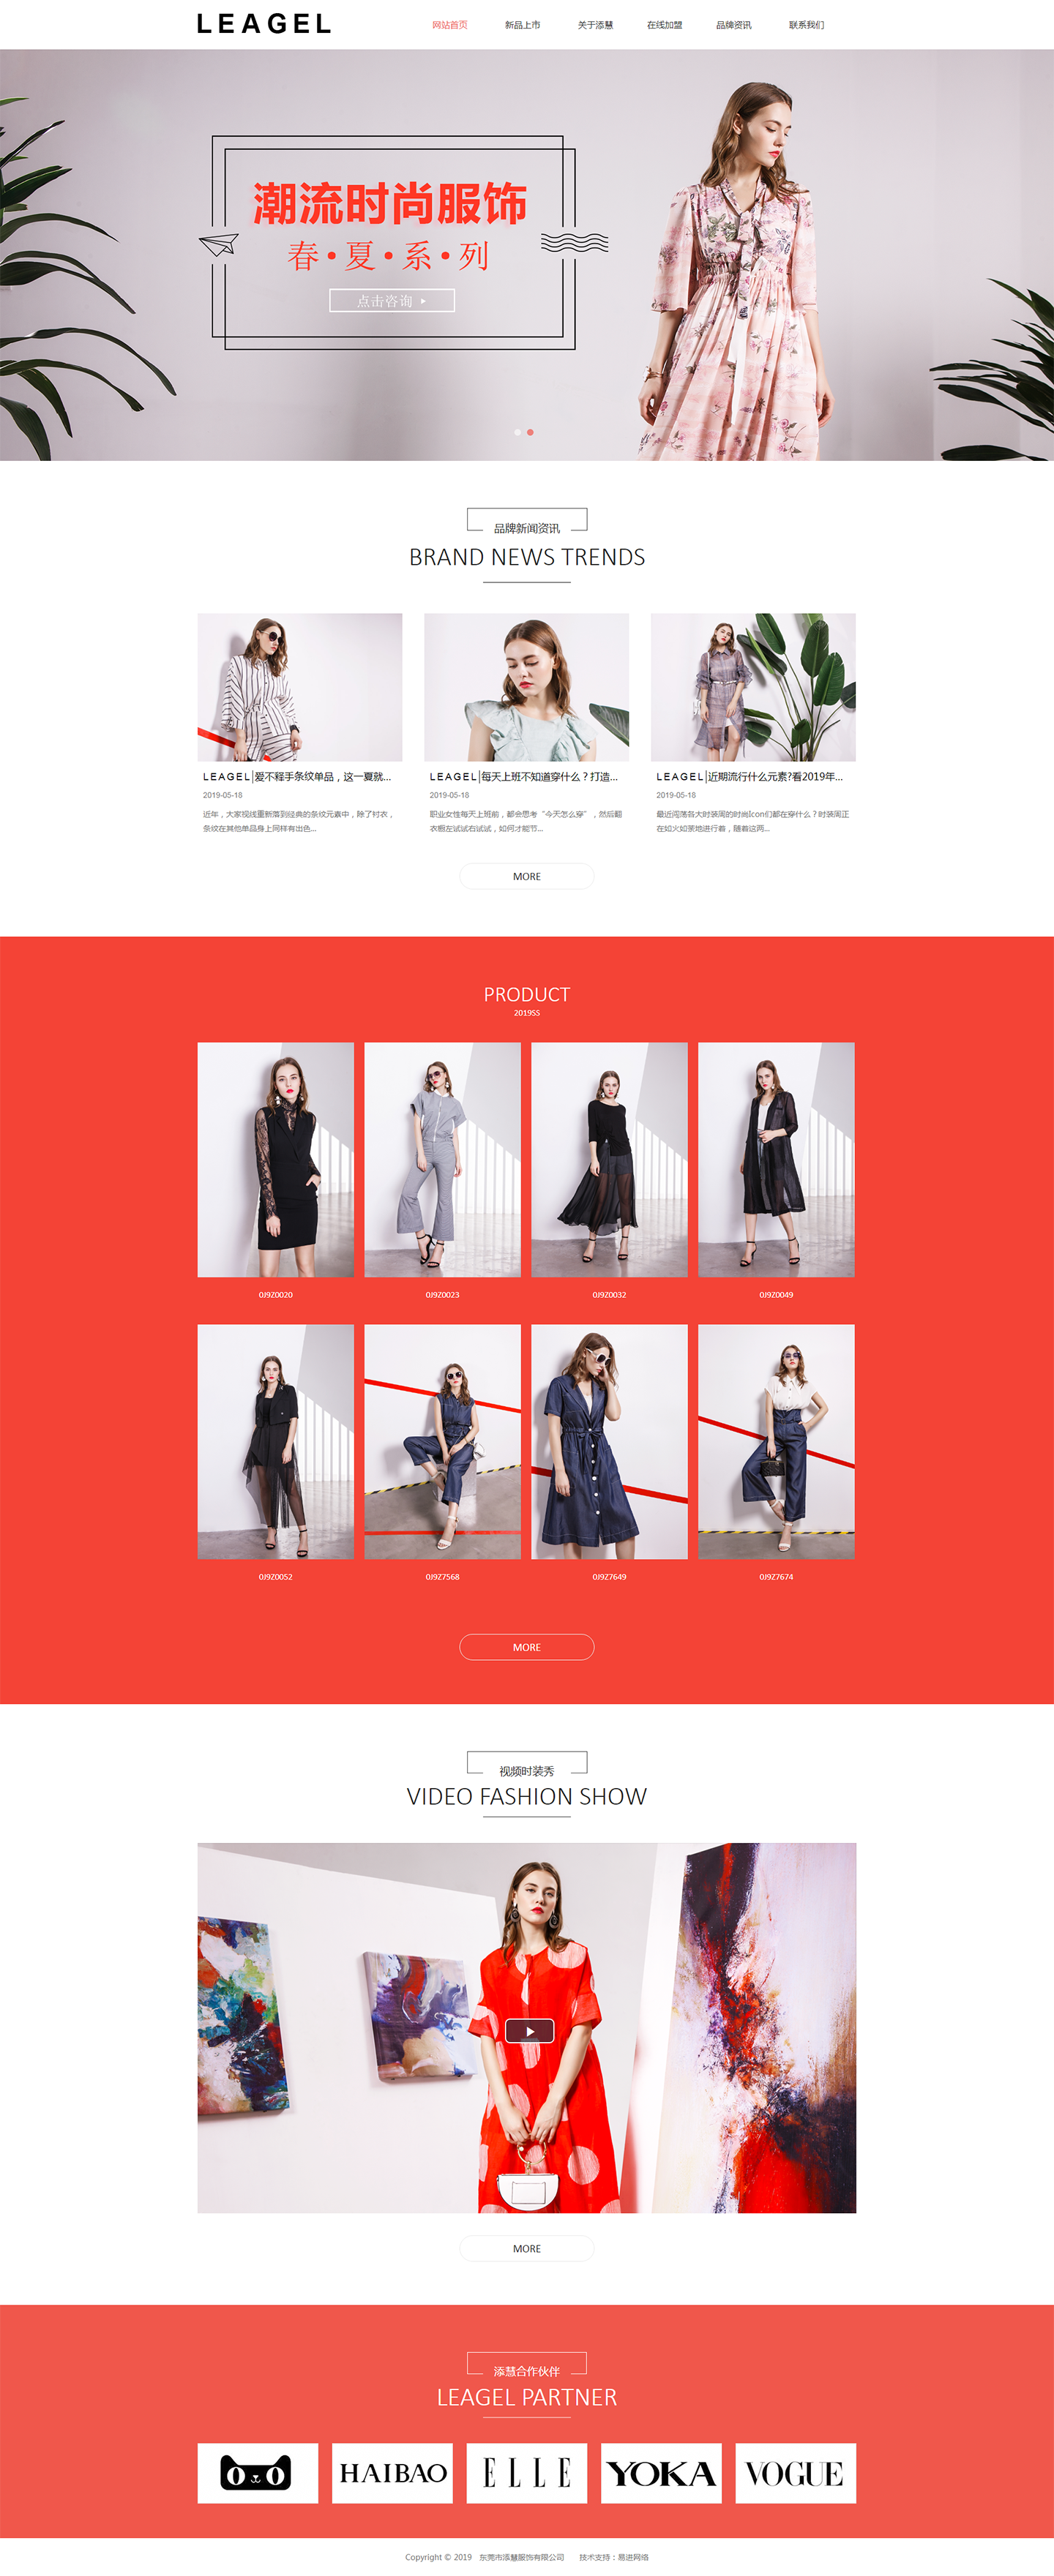 东莞市添慧服饰有限公司是一家集产品研发、设计、生产、营销一体的现代化高级成衣女装品牌企业，坐落于中国.jpg